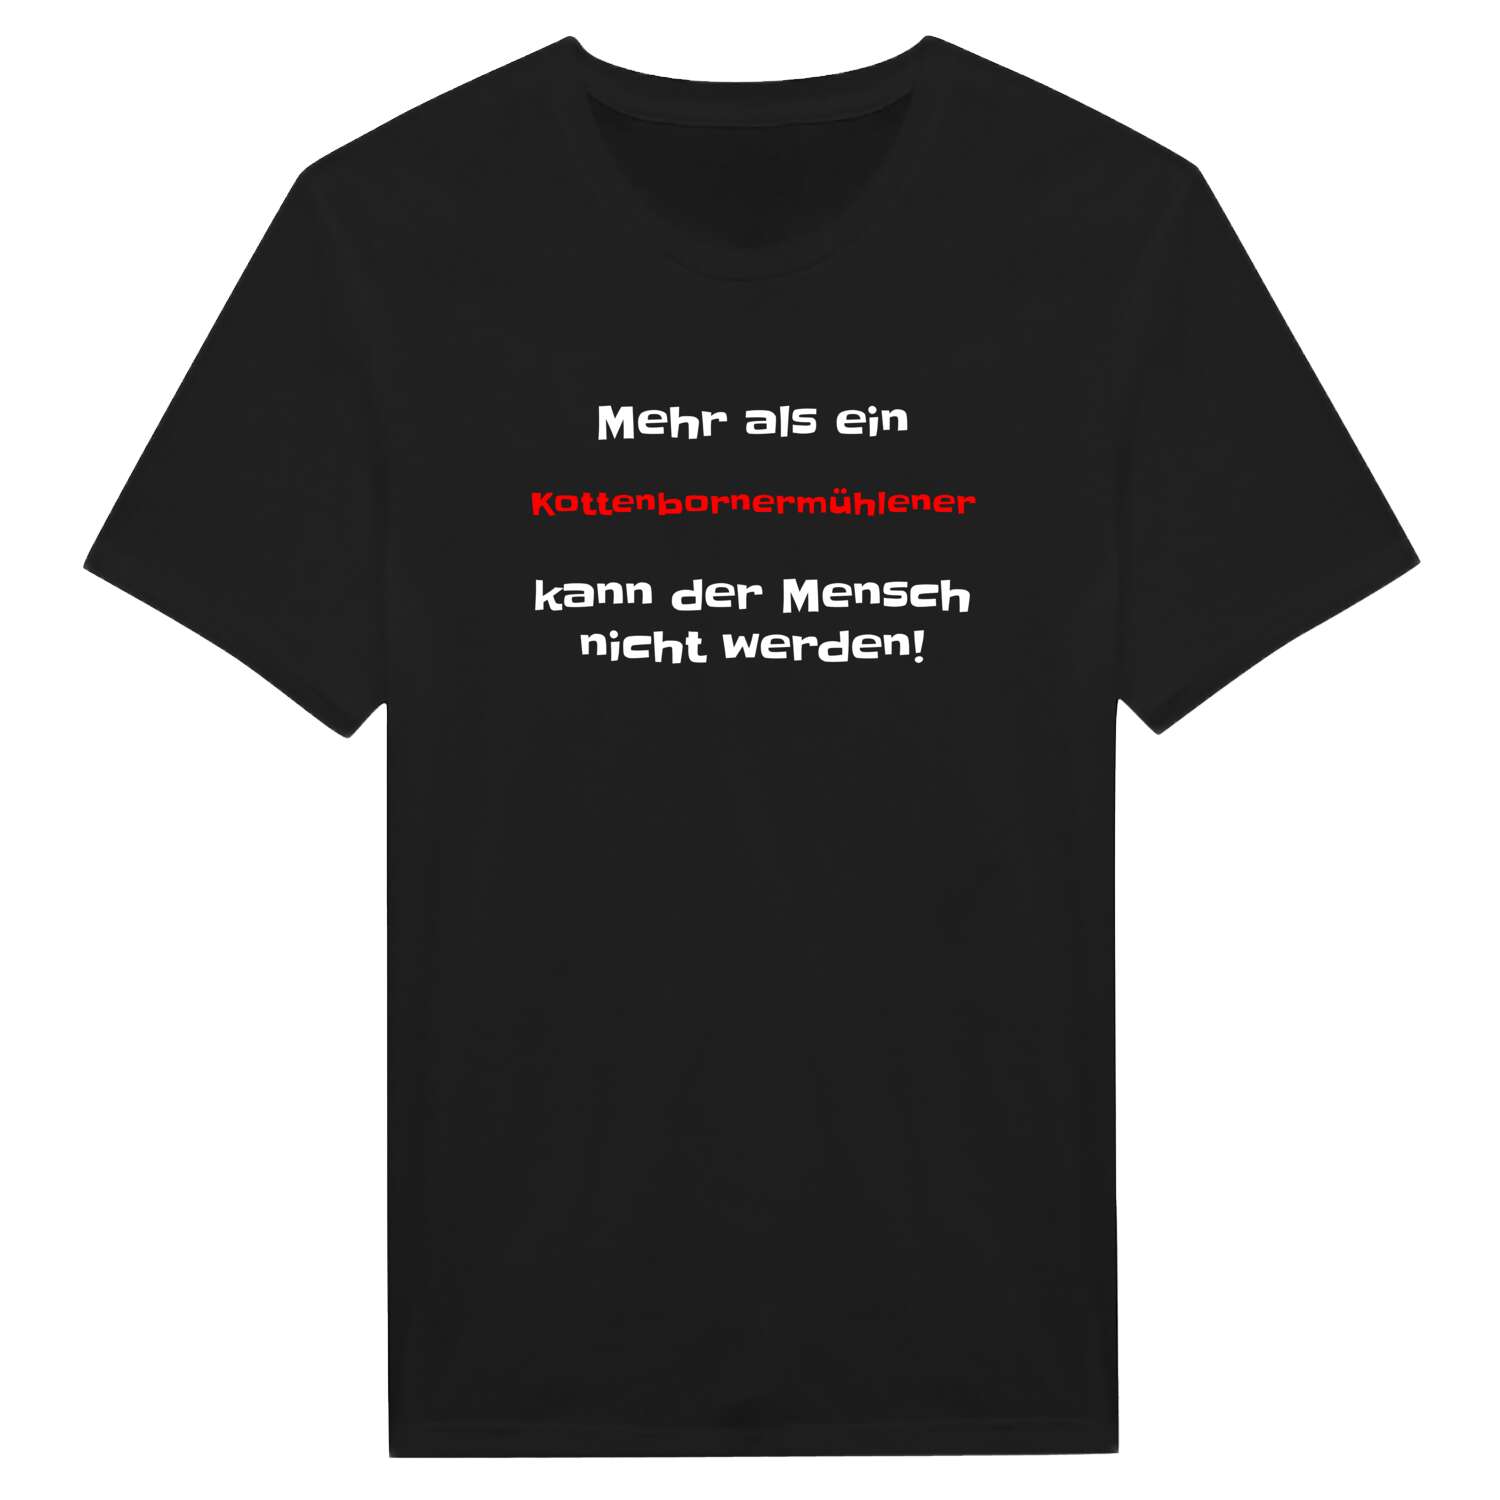 Kottenbornermühle T-Shirt »Mehr als ein«